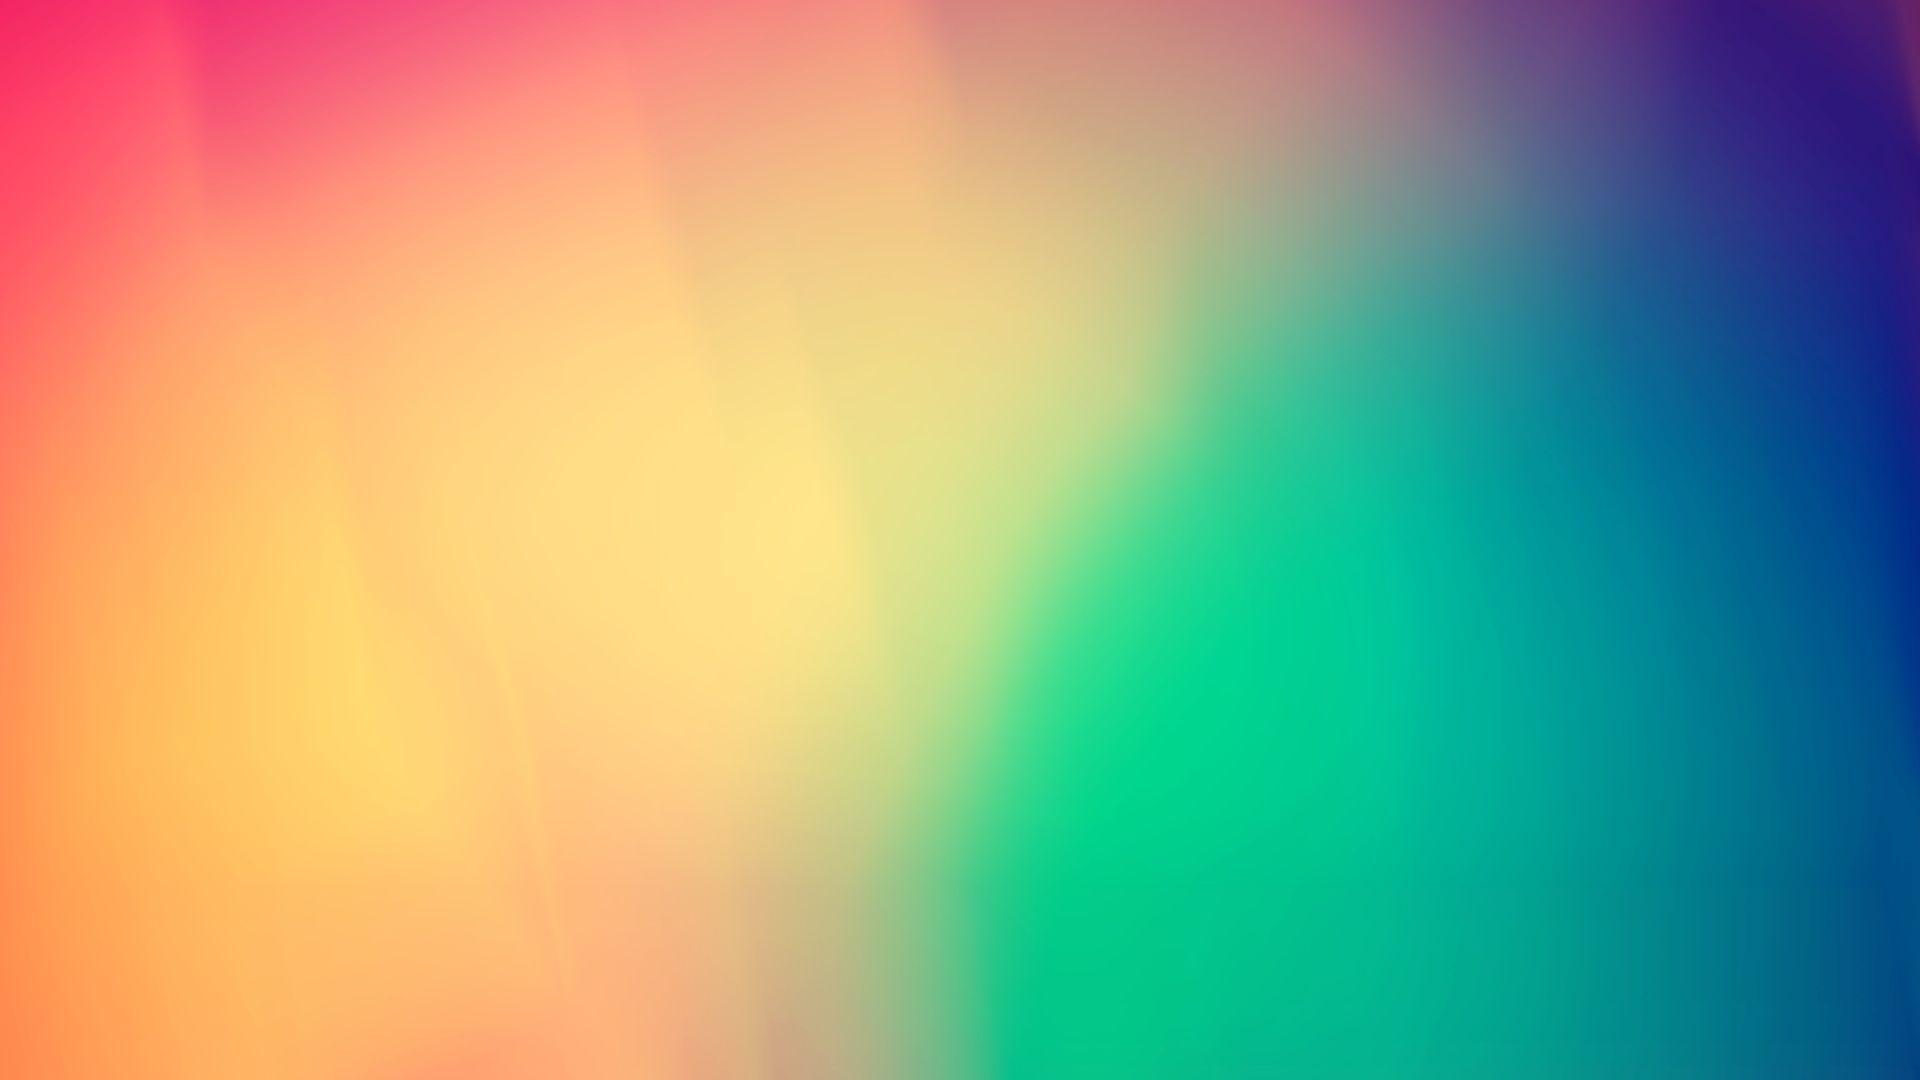 1920x1080 HD Plain Wallpaper For Background, Jasper Deltoro - Ánh sáng đầy màu sắc